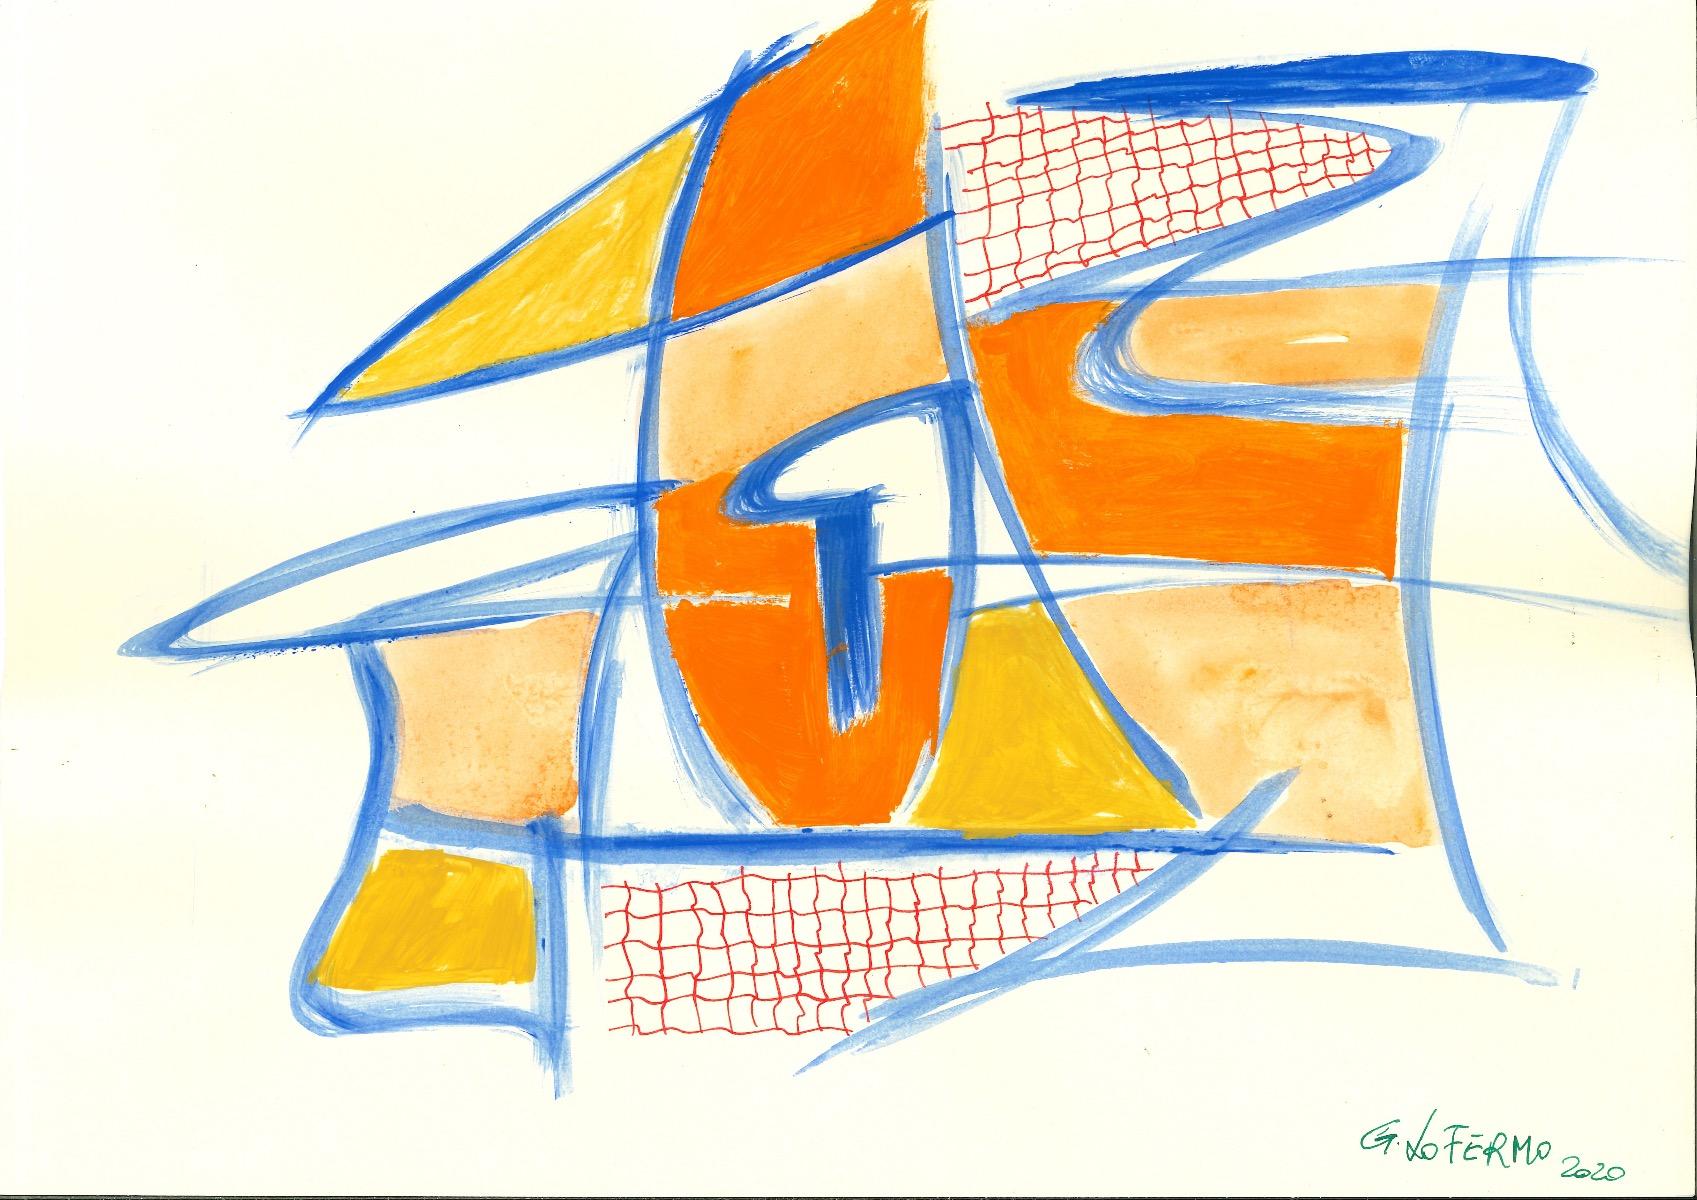 Blue Lines ist ein Originalkunstwerk von Giorgio Lo Fermo (geb. 1947) aus dem Jahr 2020.

Mischtechnik in Tempera und Aquarell auf Papier

Vom Künstler rechts unten handsigniert und datiert

Perfekte Bedingungen.

Giorgio Lo Fermo ist ein